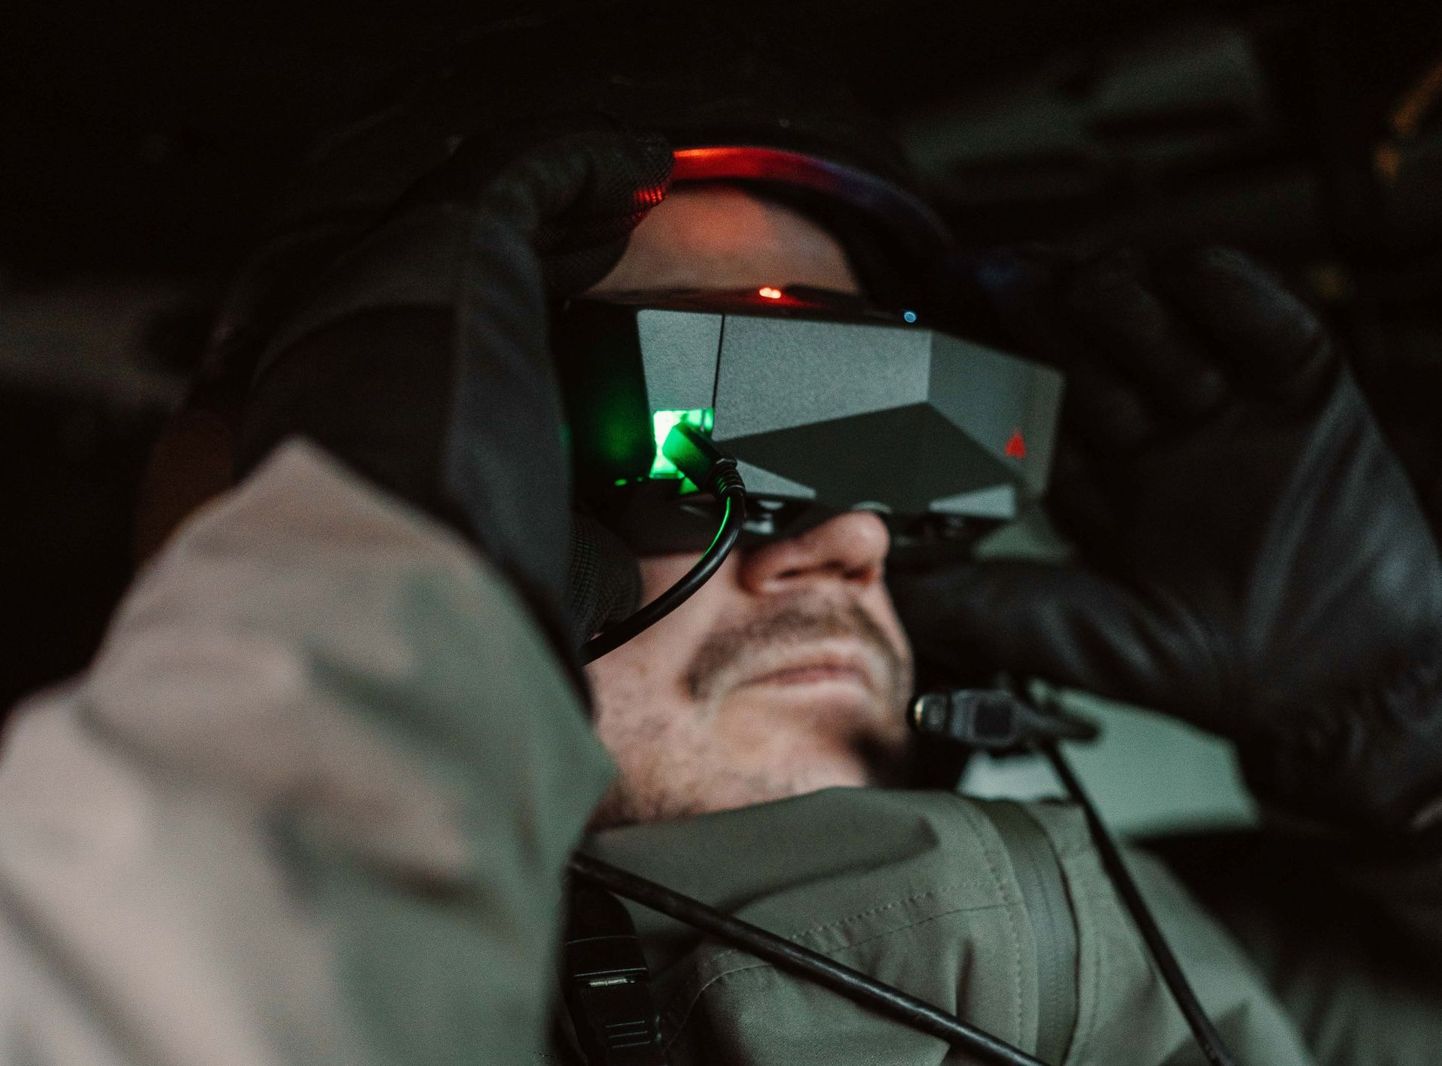 Virtuaalprillid lahinguväljal annavad palju parema ülevaate ja isegi aitavad soomukis sõites iiveldust vähendada, selgus kaitseväega koostöös tehtud katsetest.